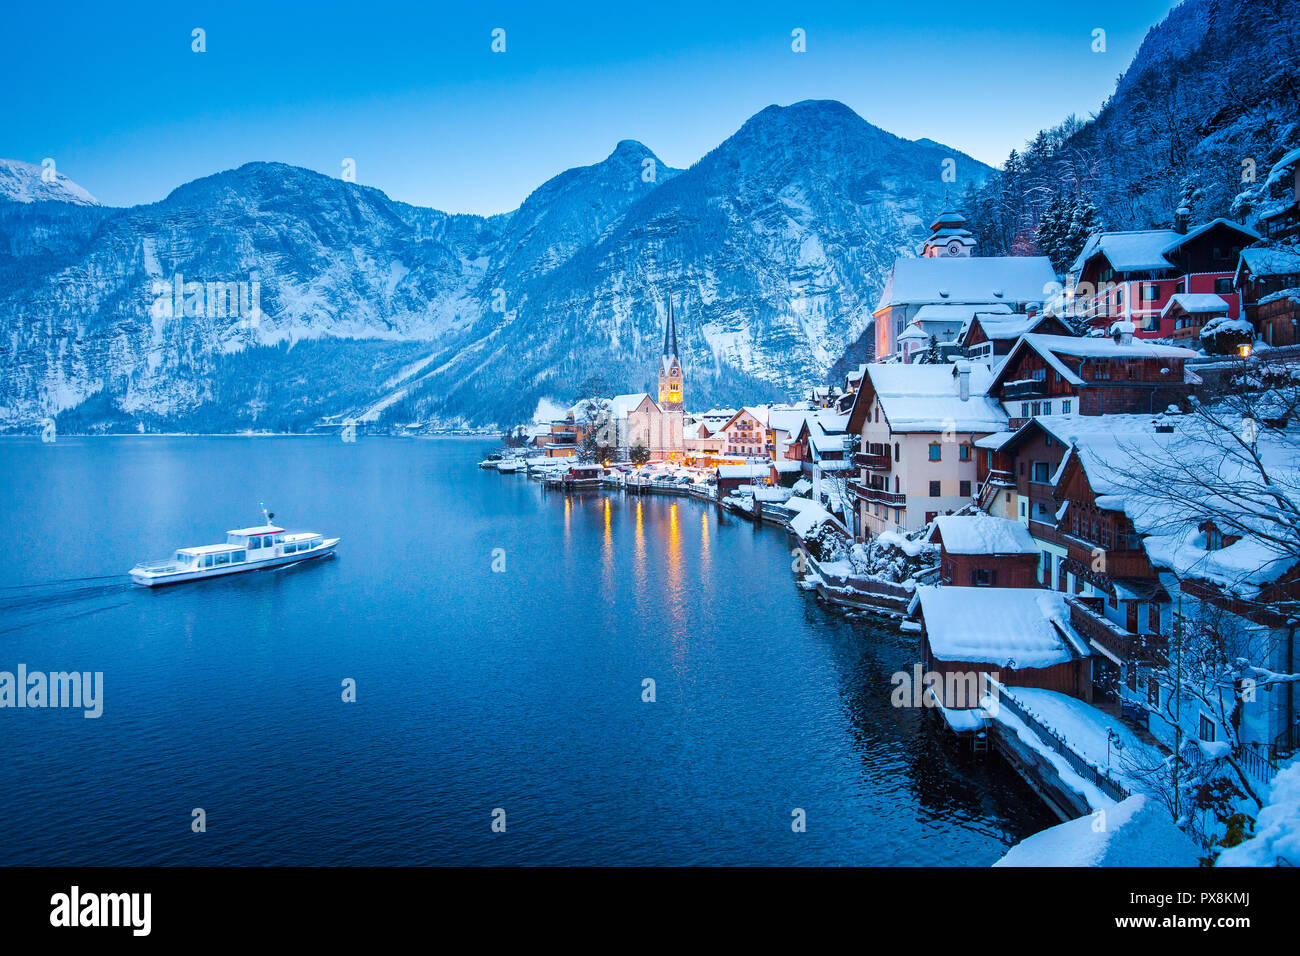 Klassische Postkarte Blick auf berühmte Hallstatt Stadt am See in den Alpen mit traditionellen Passagierschiff auf schönen Hallstattersee in mystischer Dämmerung d Stockfoto